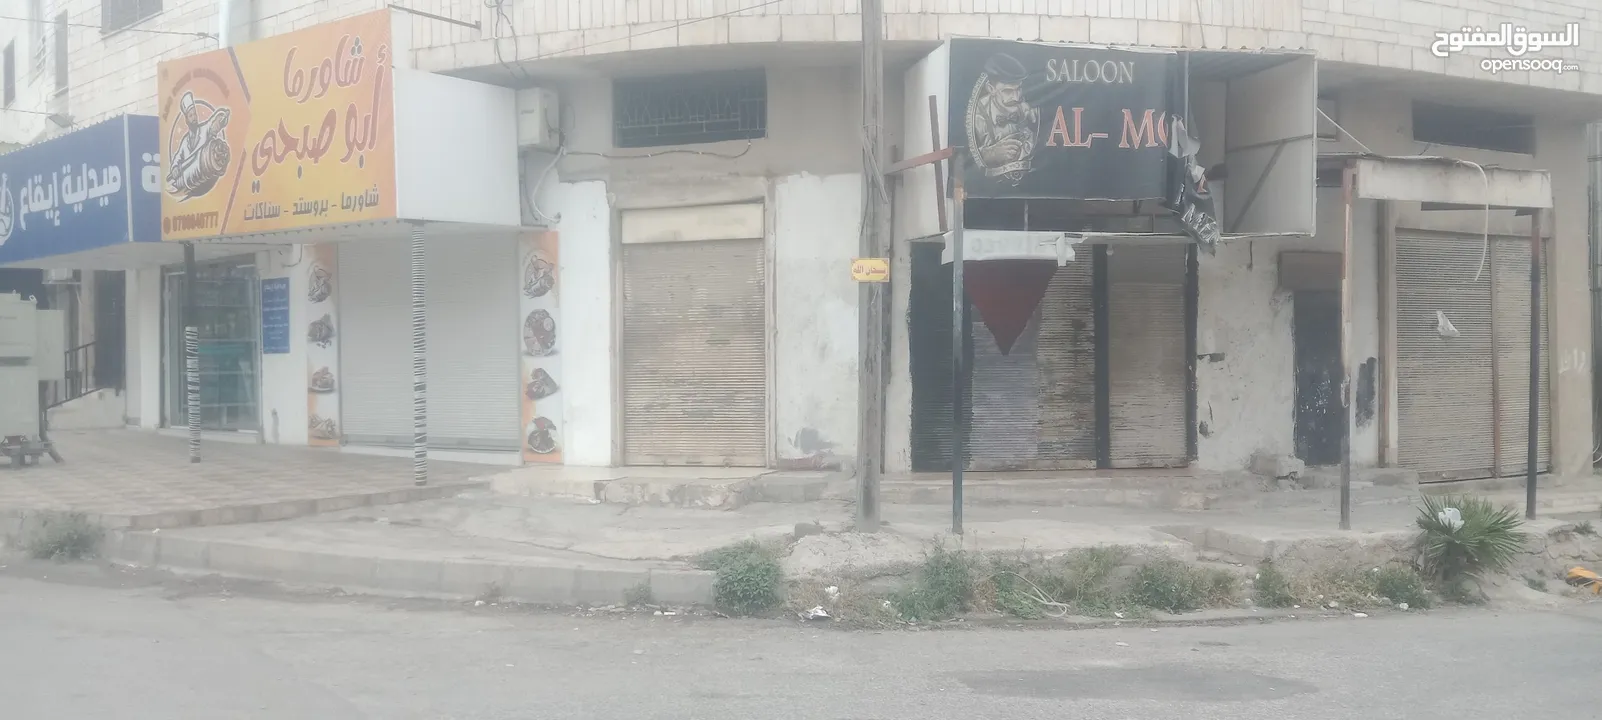 محل يصلح مستودع شارع بلاط الشهداء